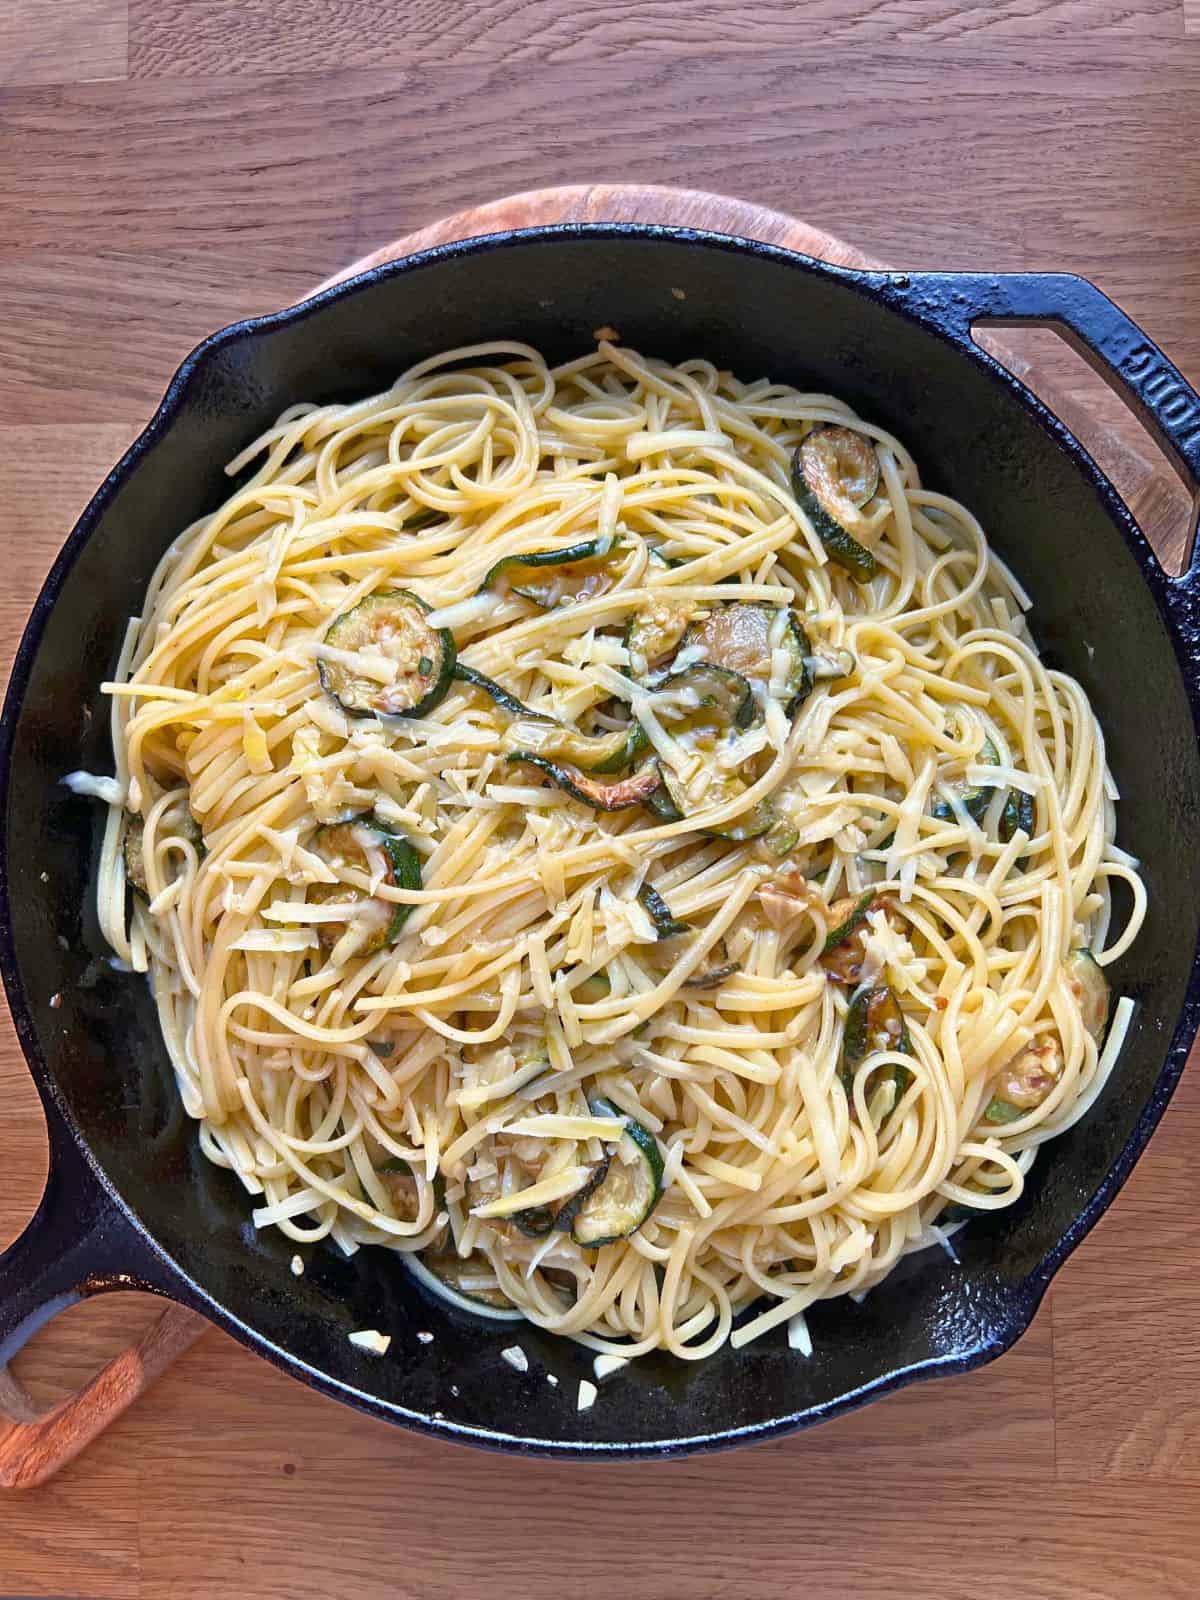 Spaghetti alla Nerano in a large iron skillet.